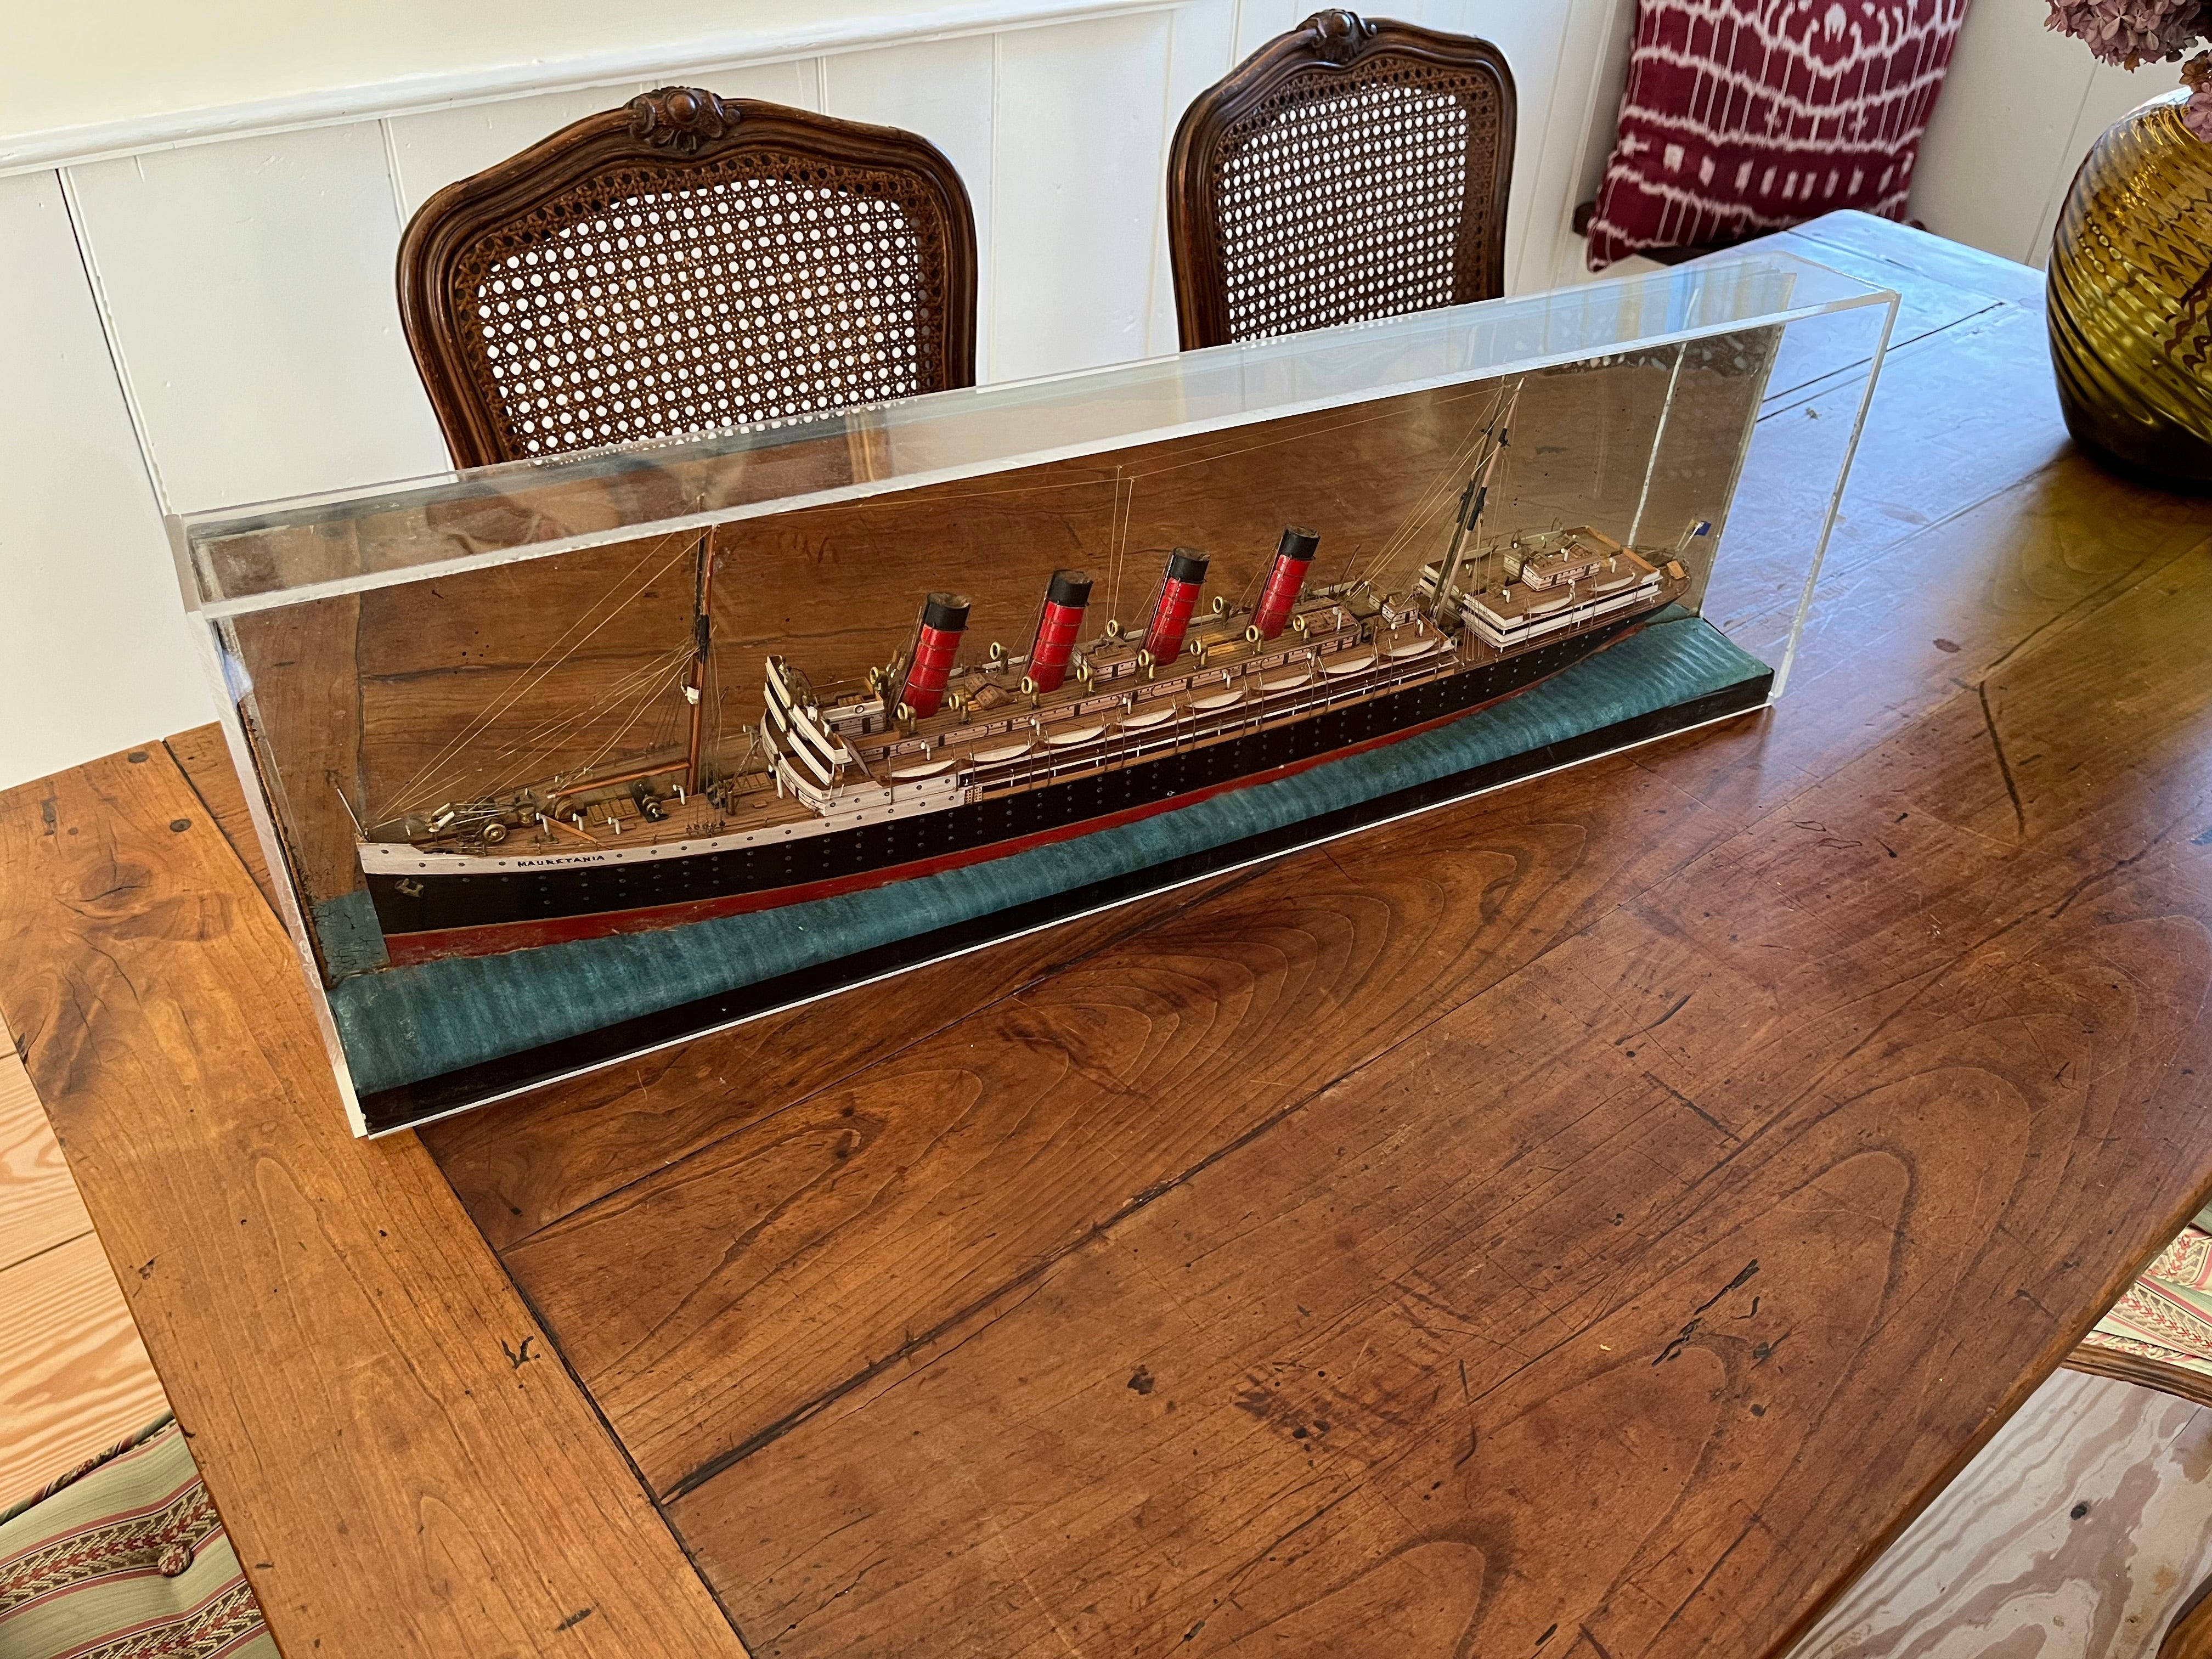 Belle maquette de demi-coque du RMS Mauretania, navire jumeau du malheureux Lusitania. Fabriquée à la main en bois avec des accessoires en métal, la maquette est astucieusement montée sur un miroir d'époque, ce qui donne l'illusion d'une maquette de